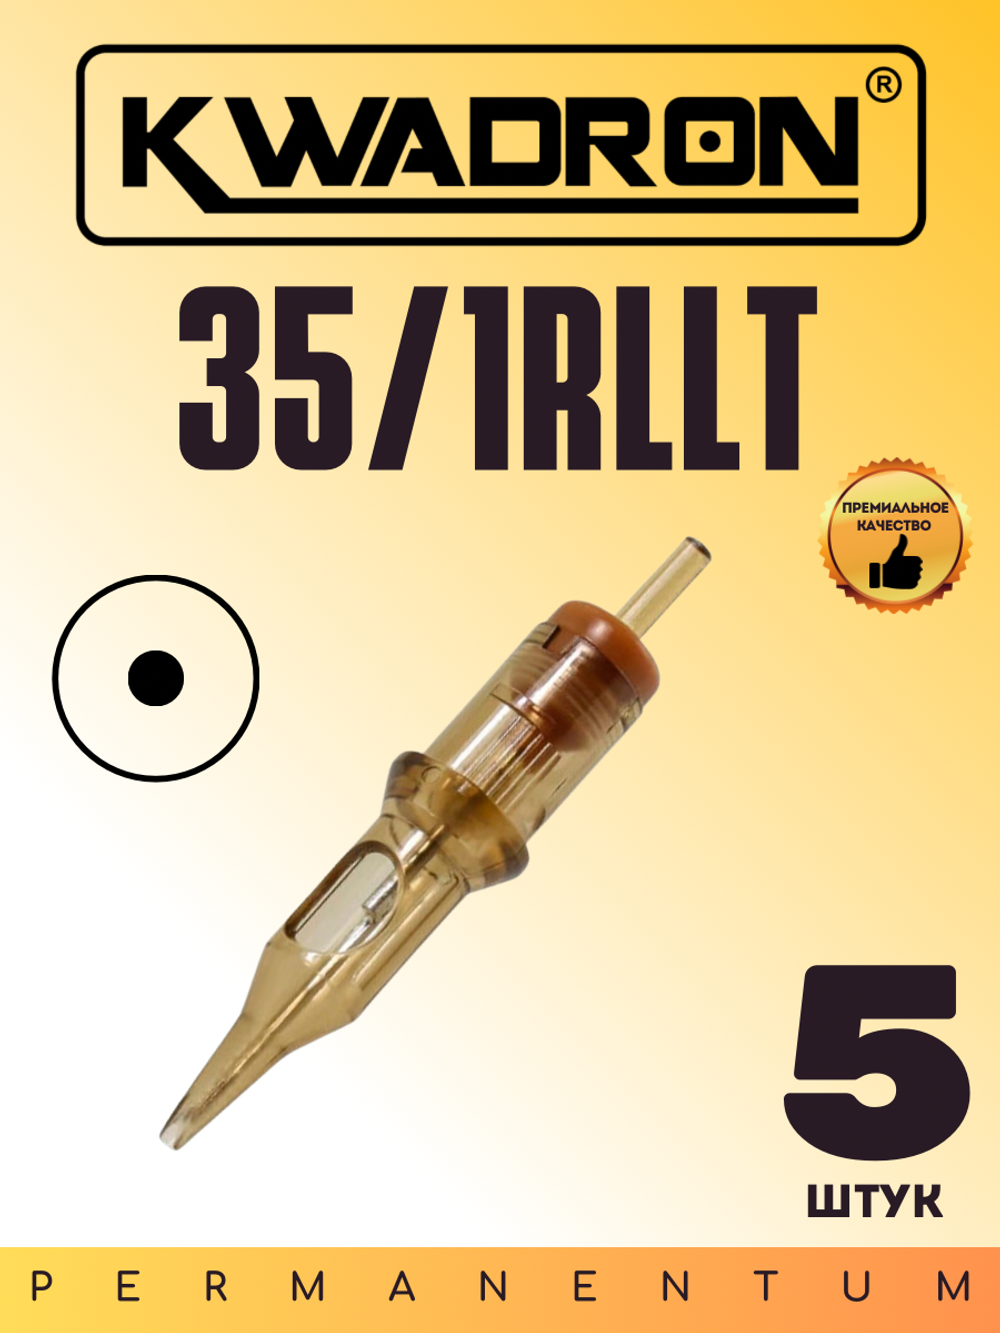 Картридж для татуажа "KWADRON Round Liner 35/1RLLT" блистер 5 шт.